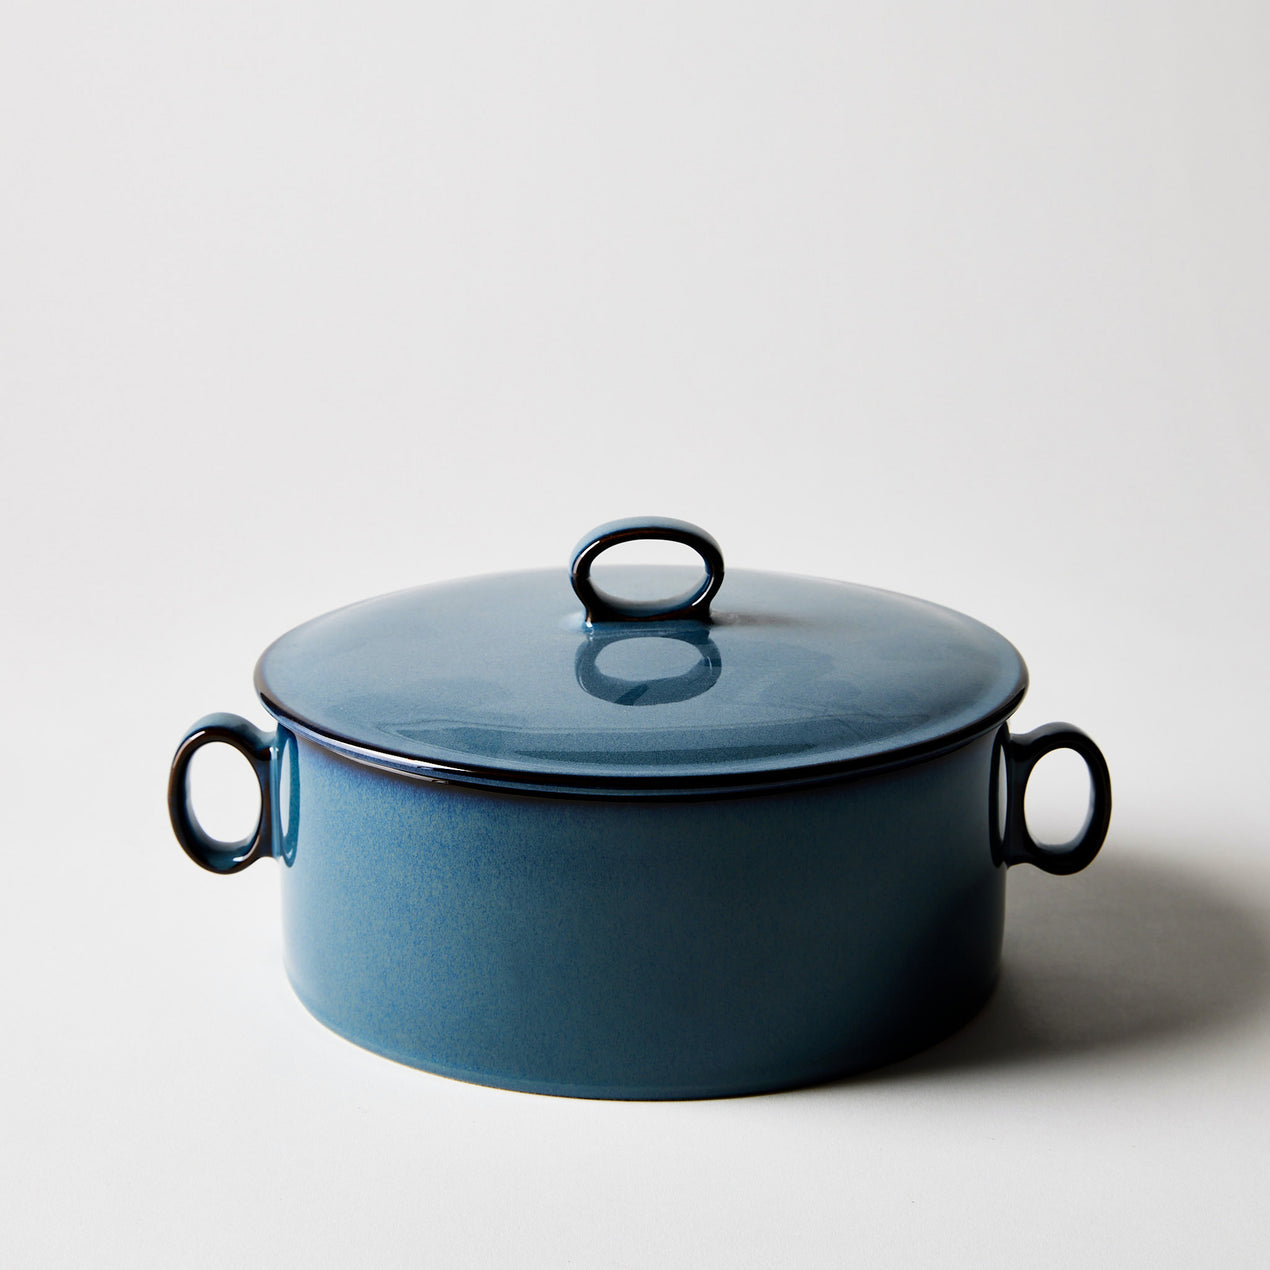 https://www.dansk.com/cdn/shop/products/2022-0303_dansk_generations-ii-dinnerware_nordic-blue-round-casserole-with-lid_silo_ty-mecham_1270x.jpg?v=1650650484